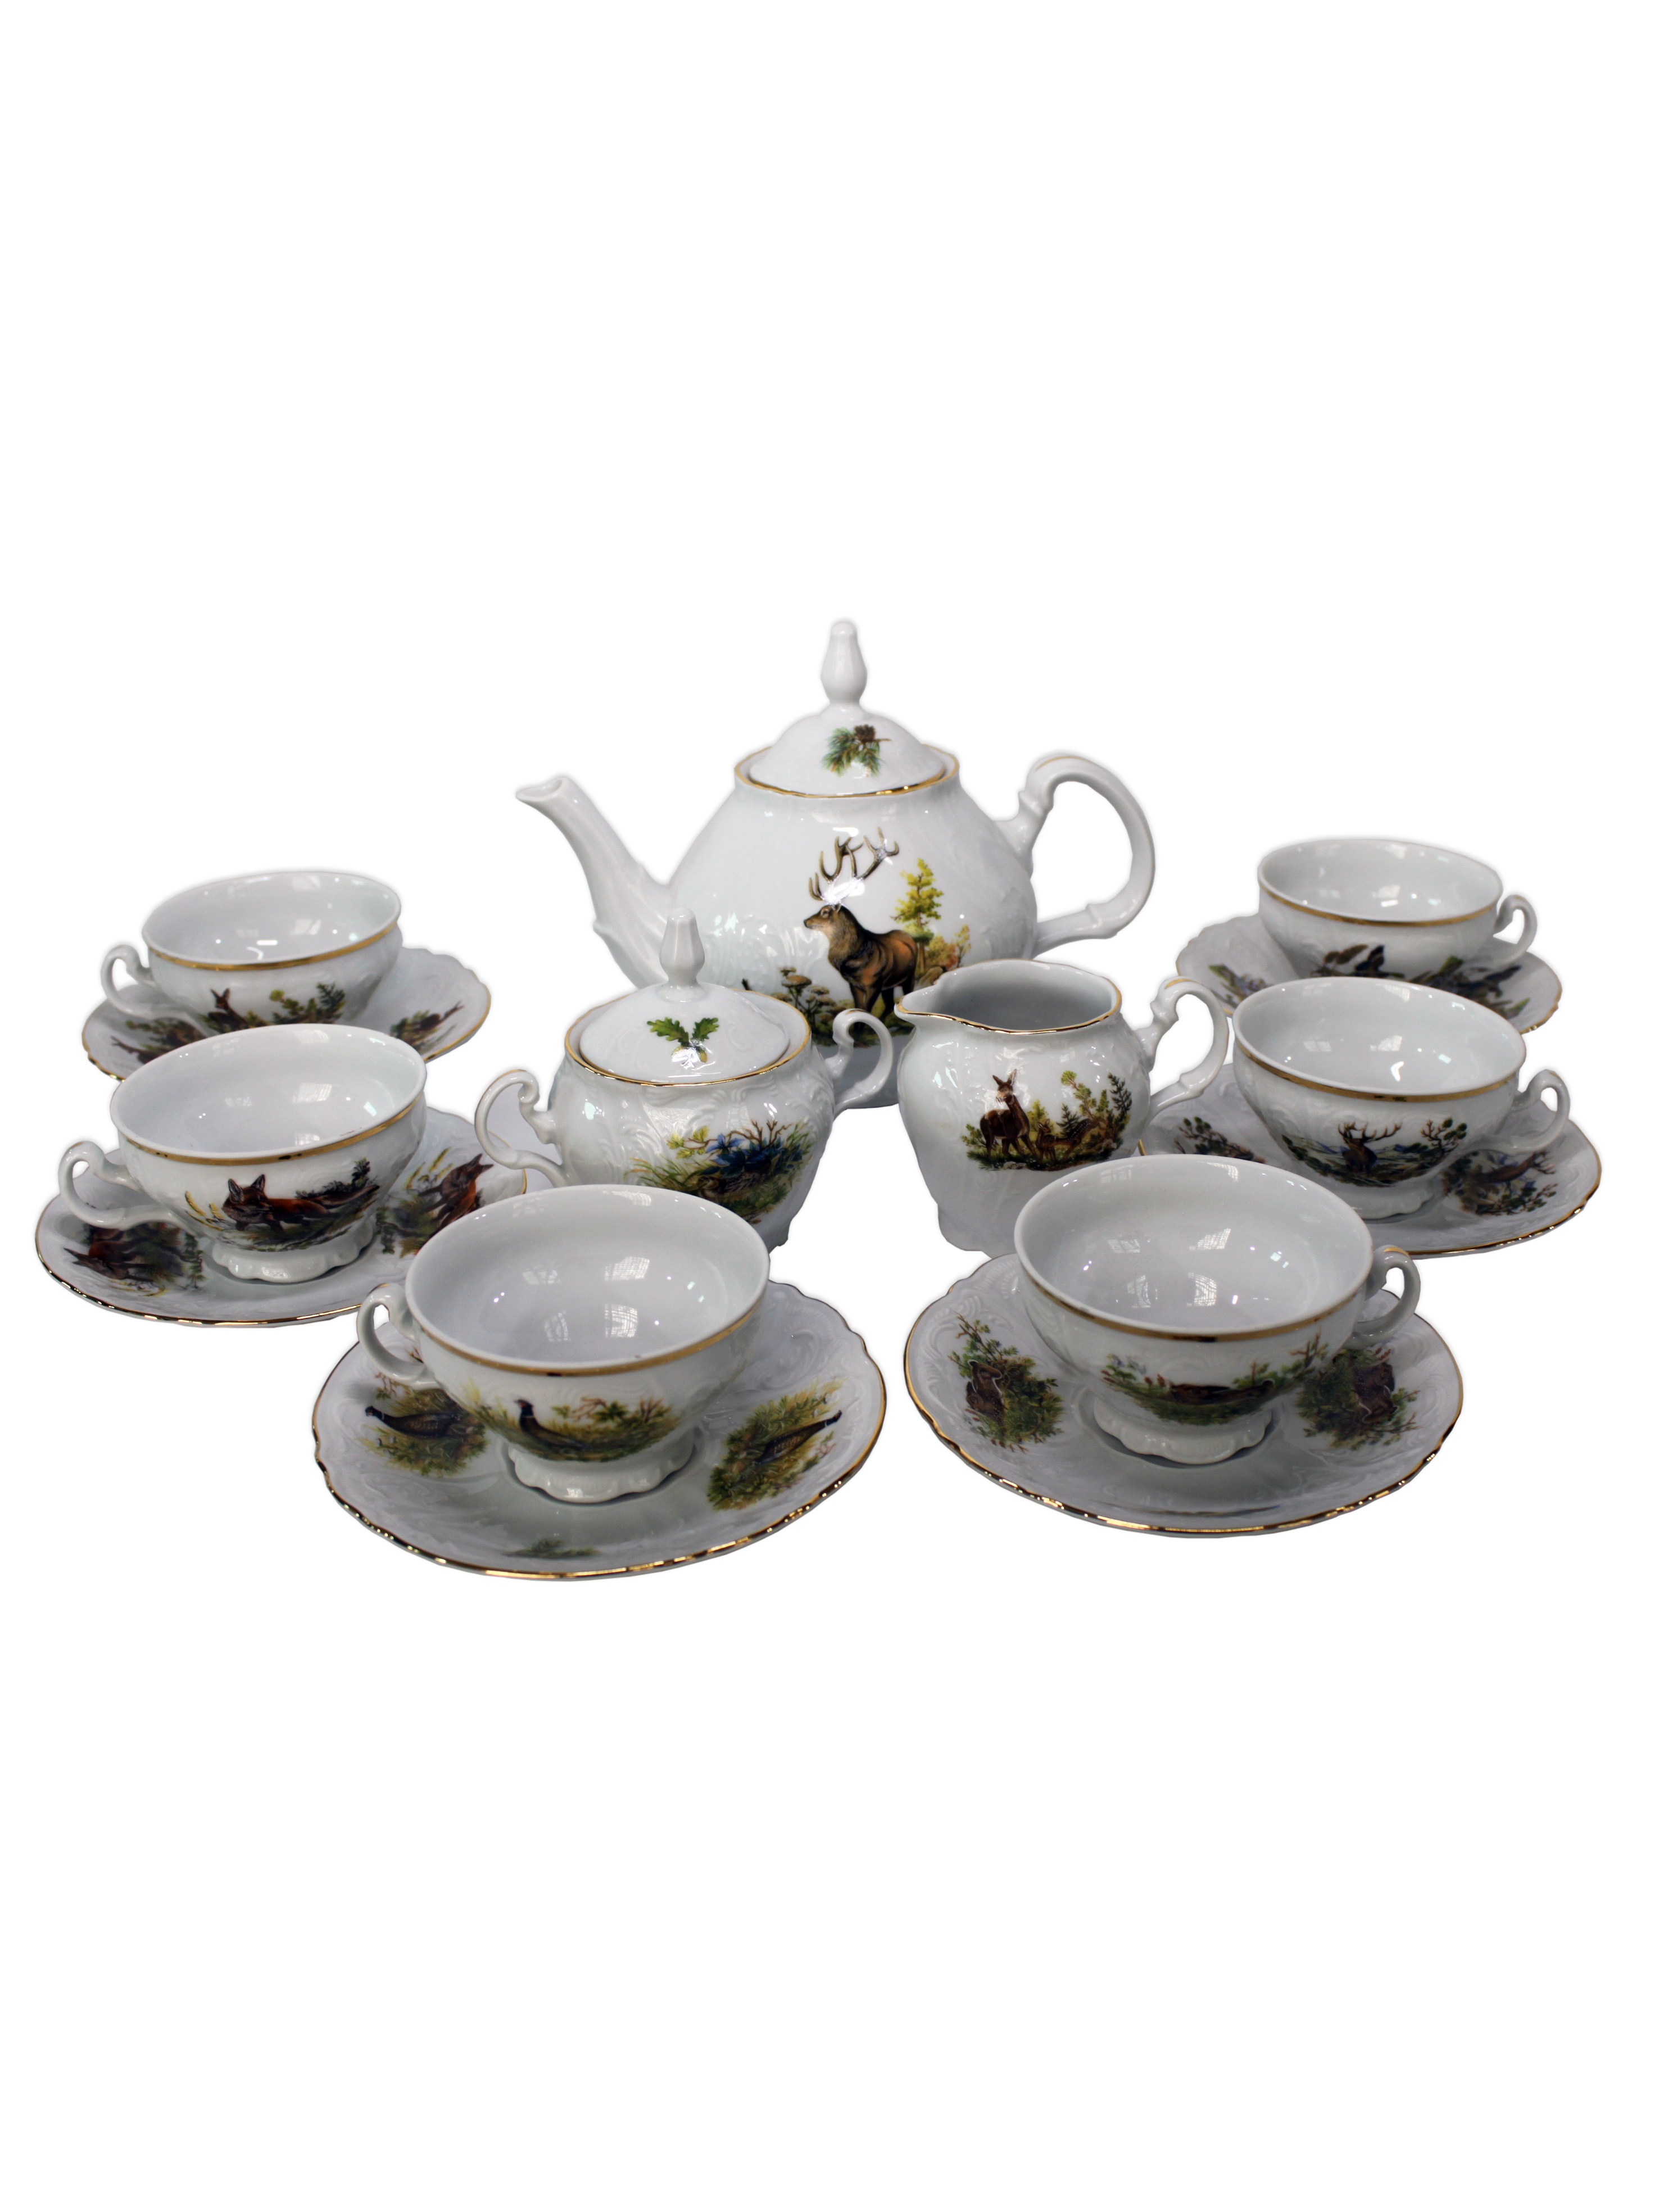 Чайный сервиз на 12 персон 44 предметов Бернадот Bernadotte декор Охотничьи сюжеты. Фарфор Тхун, Чехия.